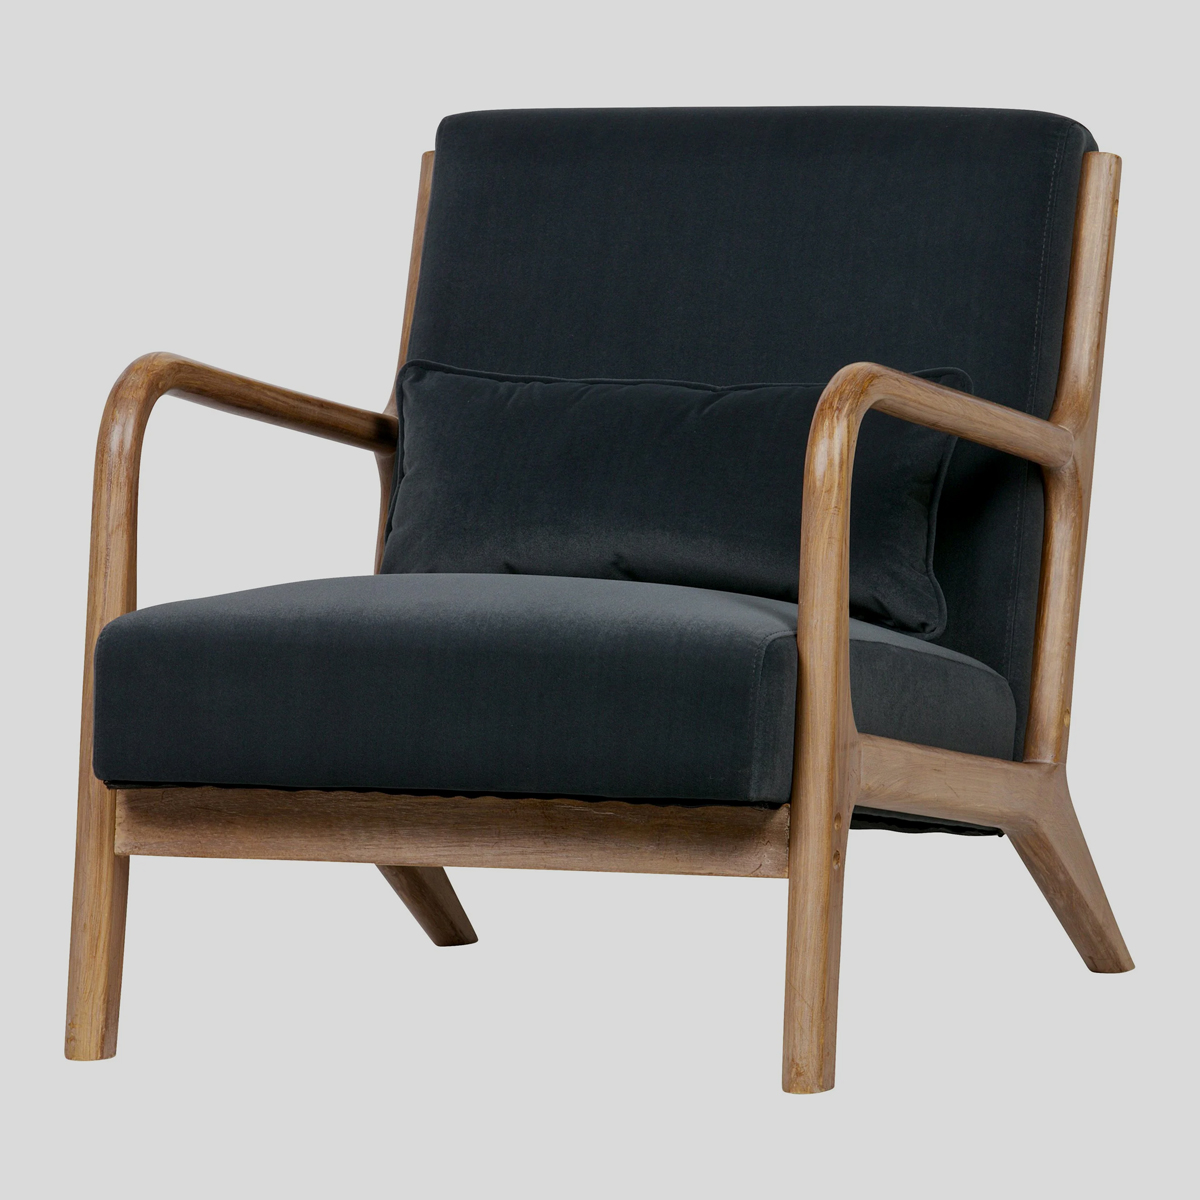 De glans van het donkerblauwe fluweel geeft de vintage fauteuil een stijlvolle look. 